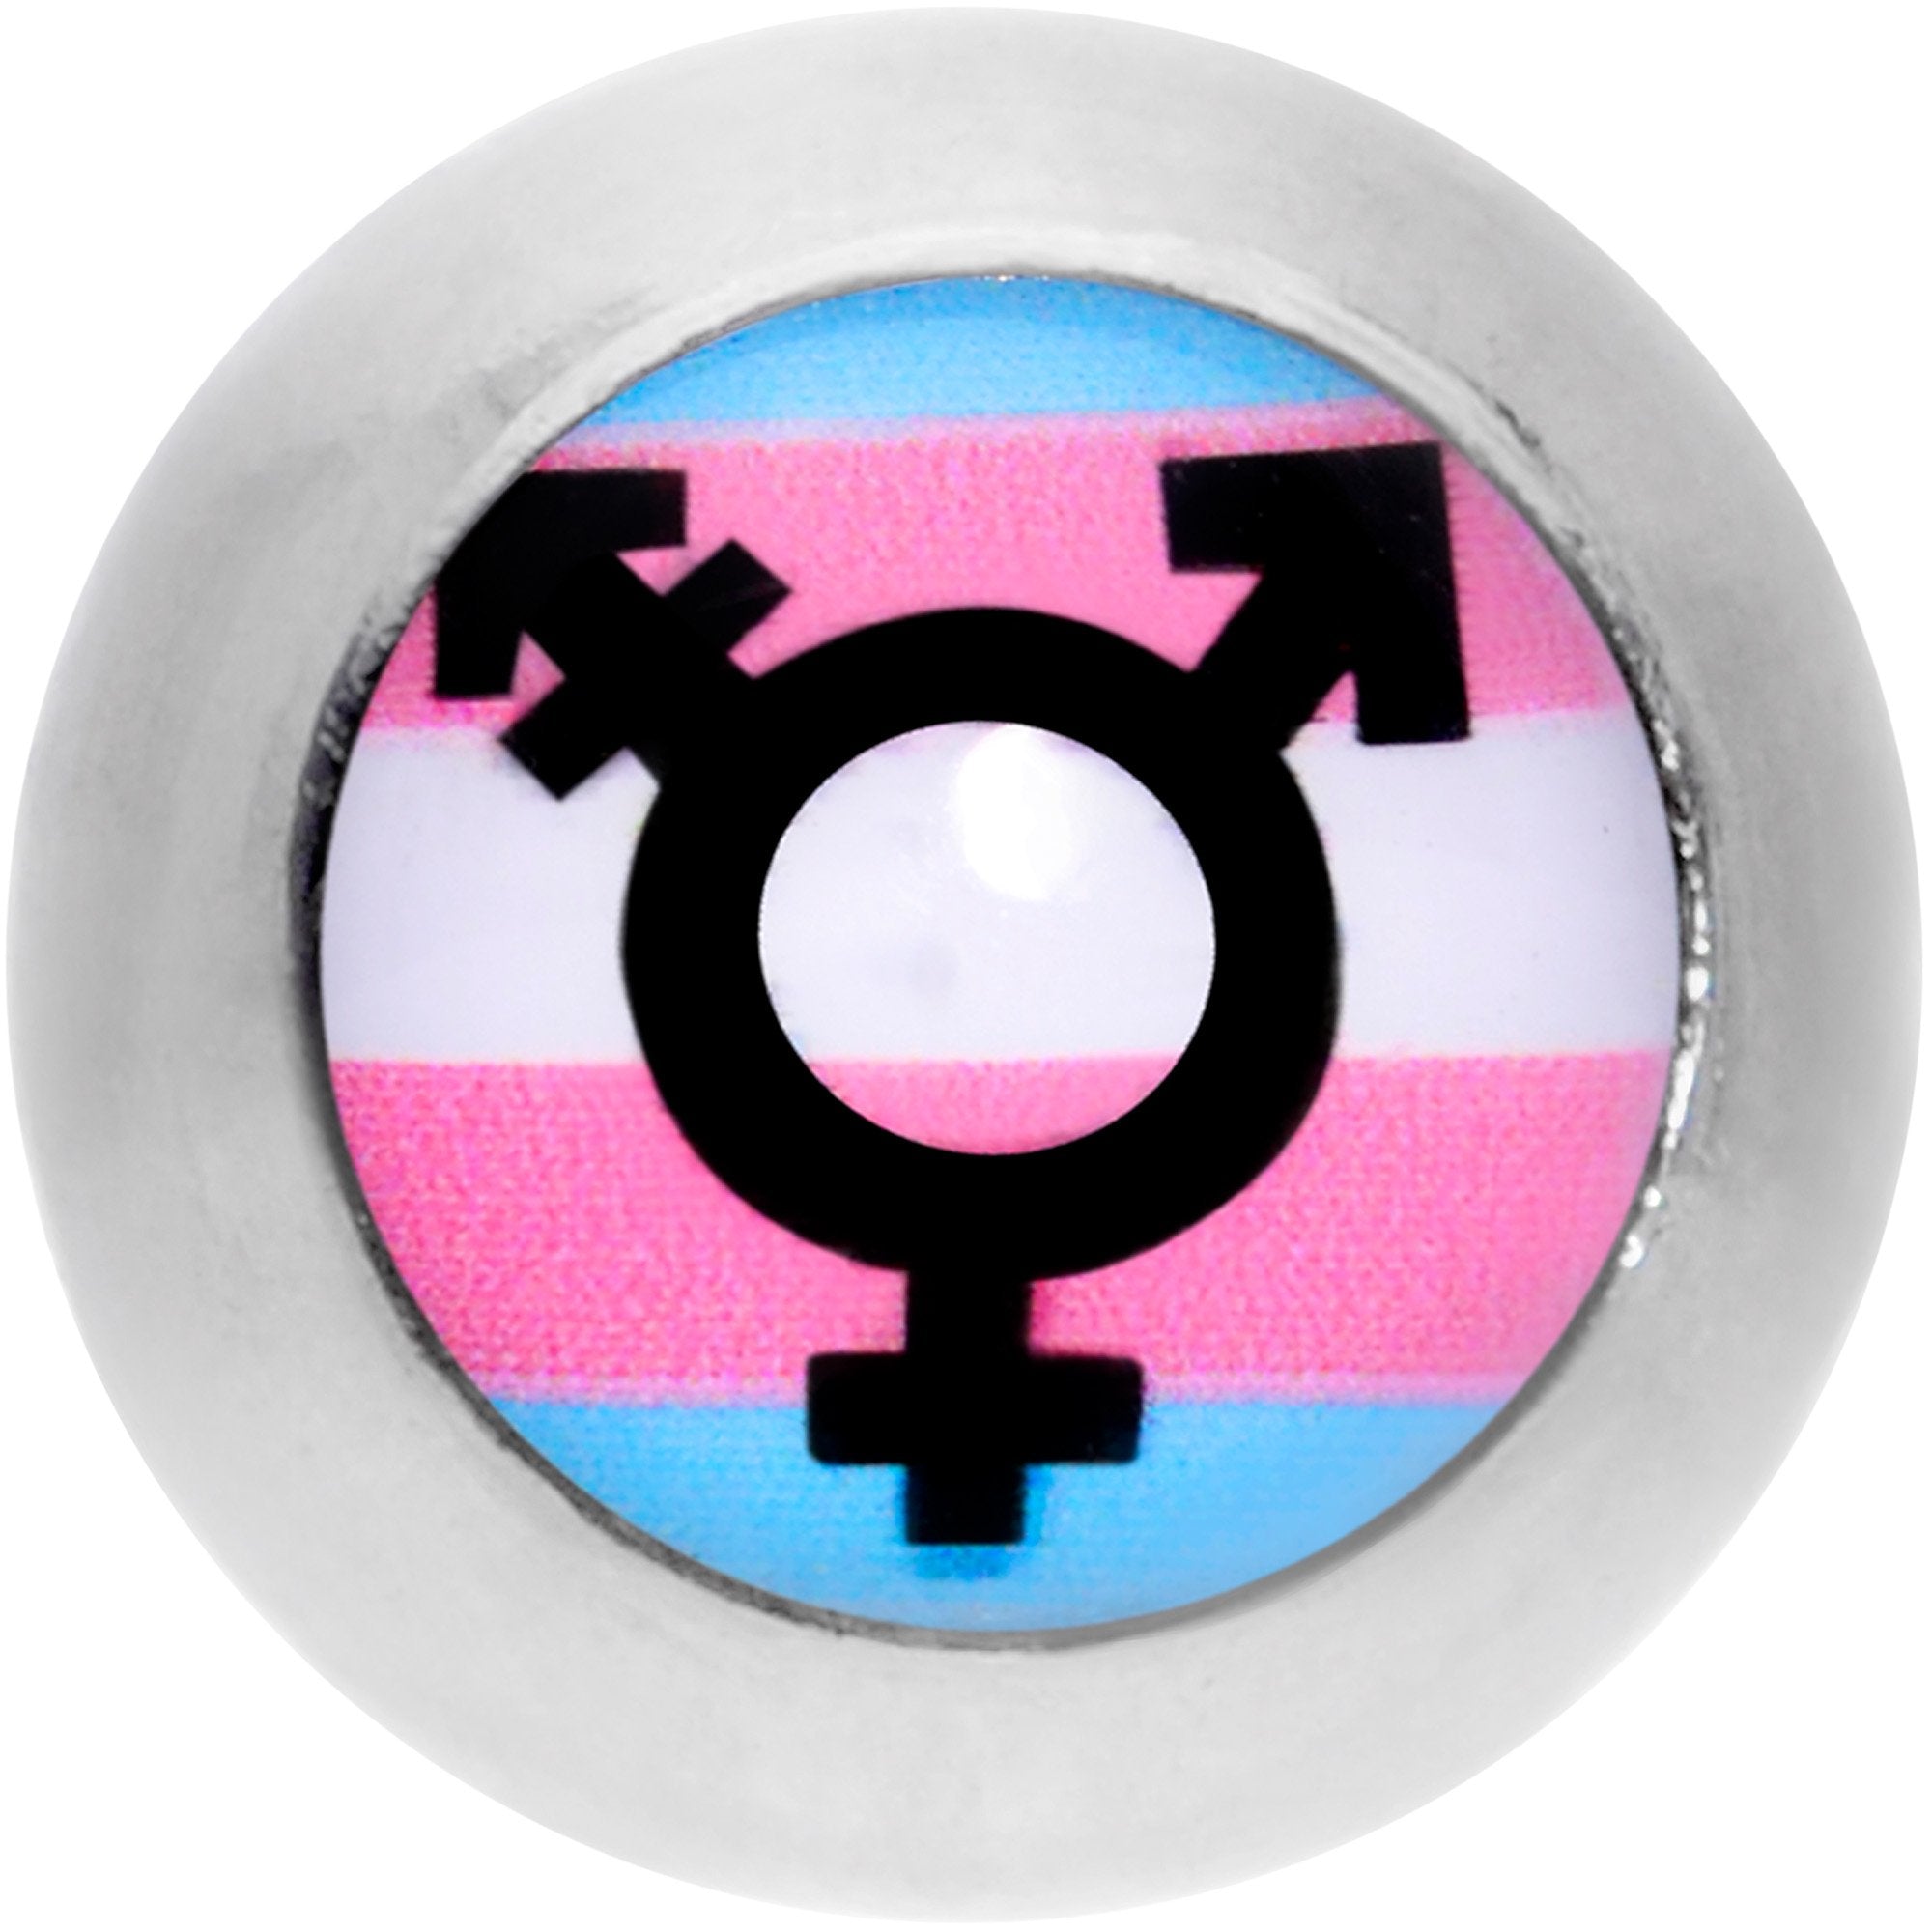 16 Gauge 1/4 Pink Blue White Transgender Pride Flag Cartilage Tragus